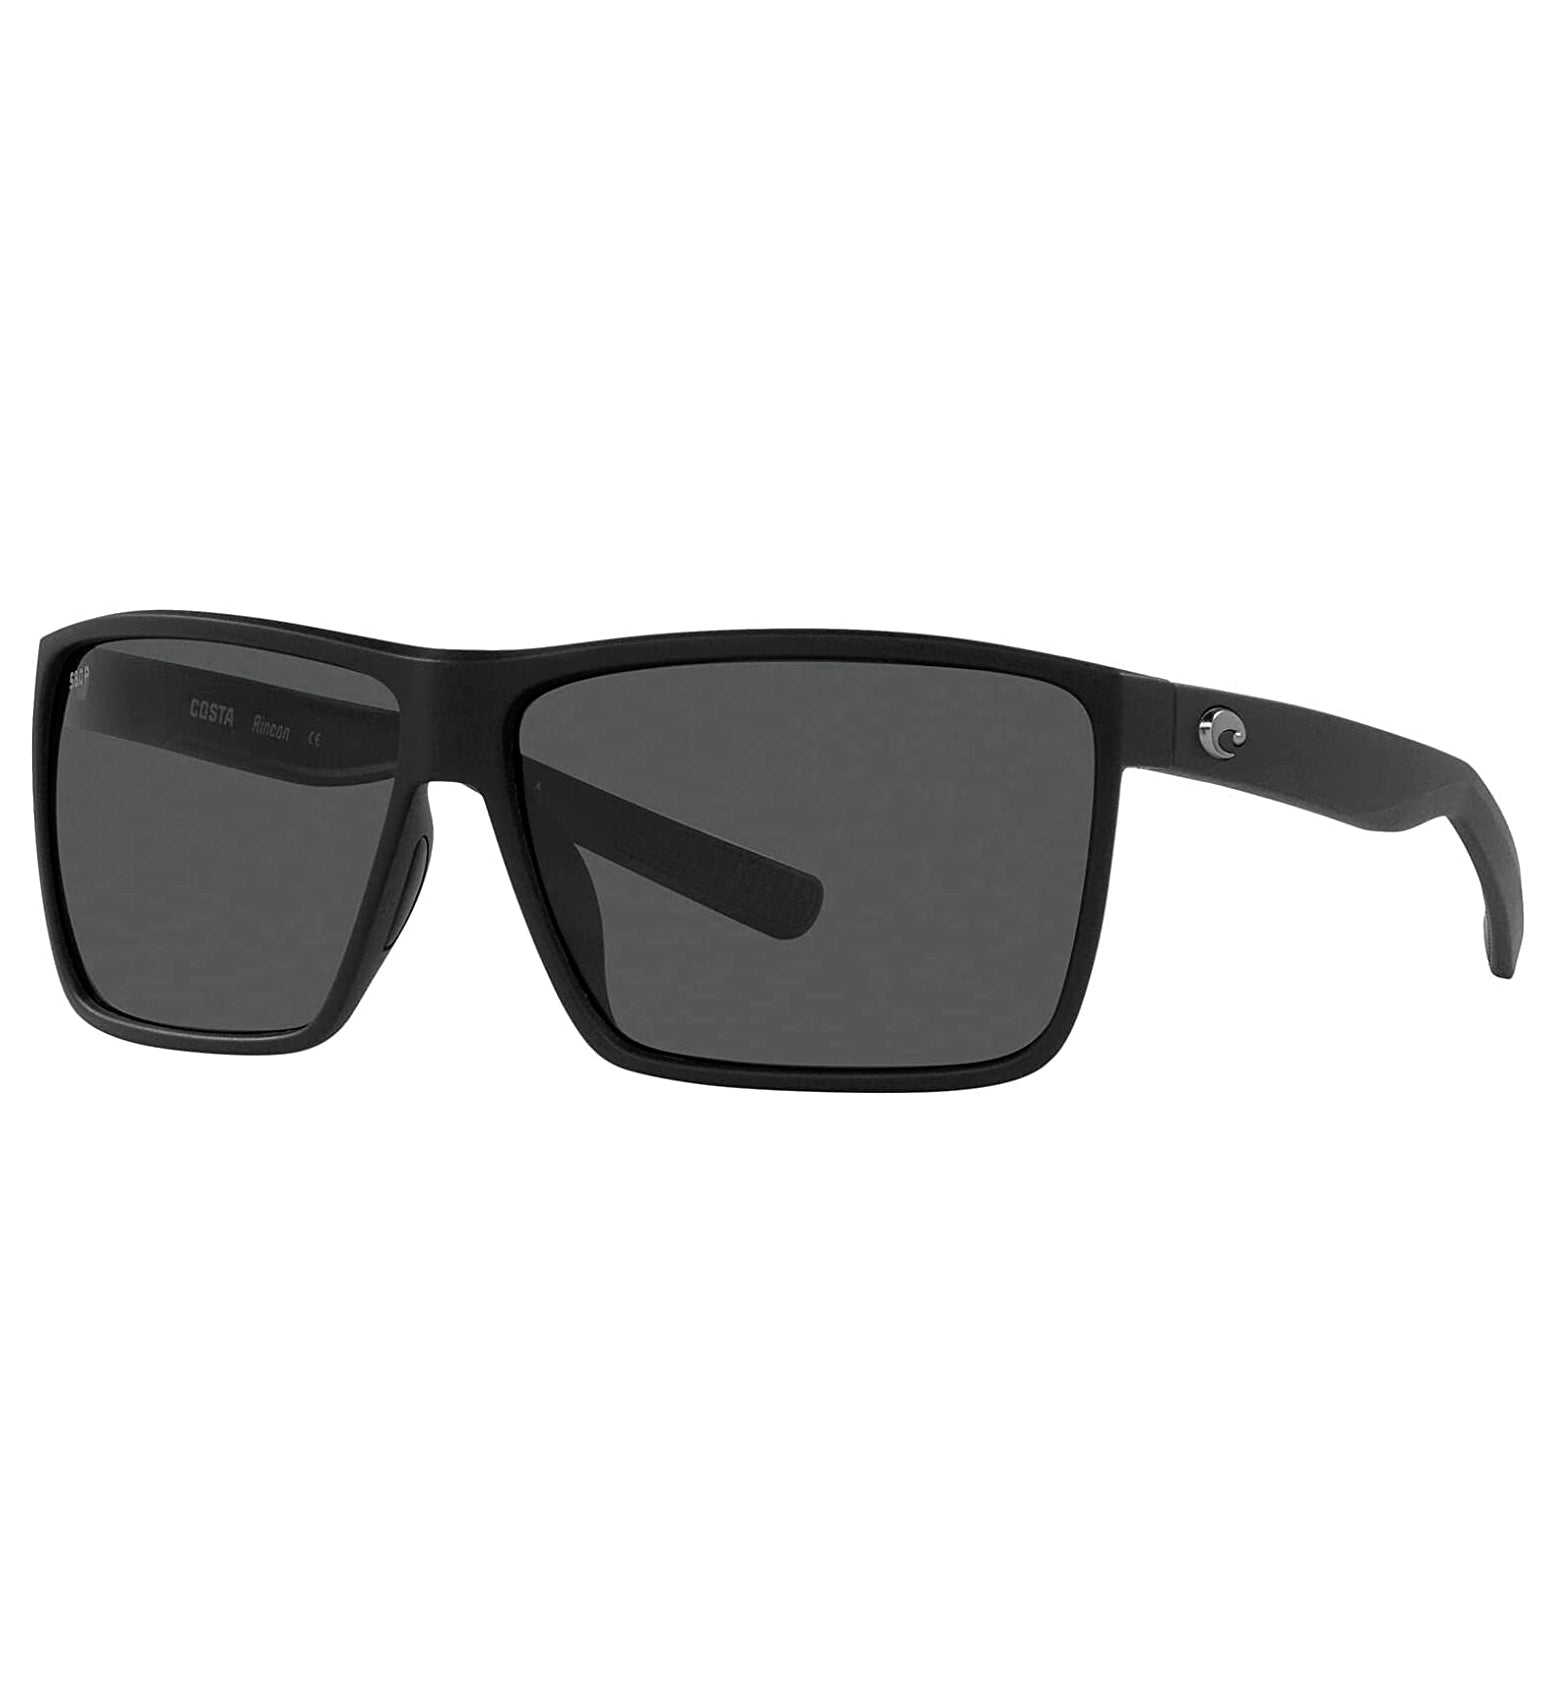 Costa Del Mar Rincon Sunglasses MatteBlack Gray 580P